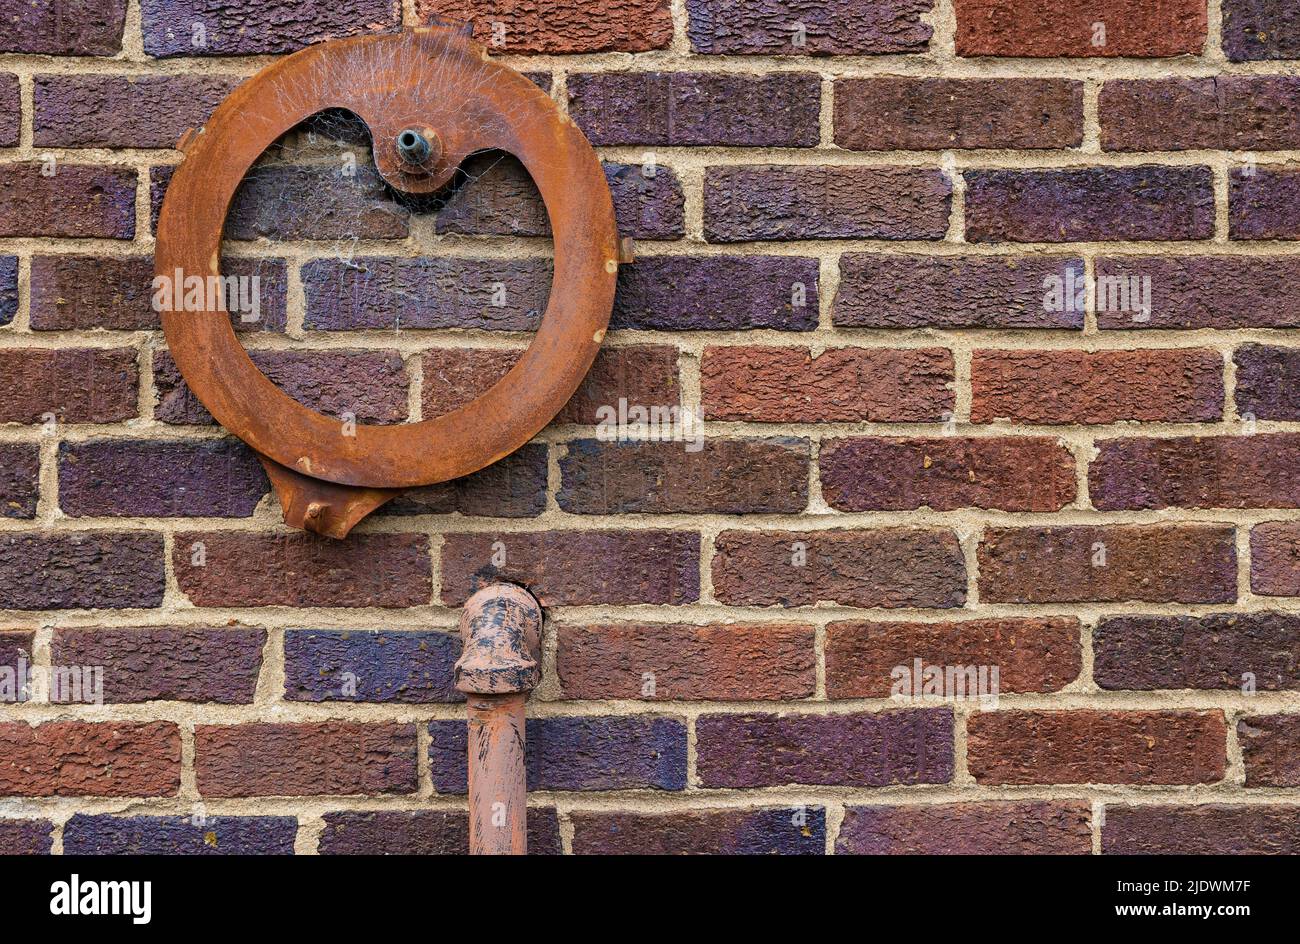 Banckground foto de una pared exterior de ladrillo con una tubería de hierro entrando en ella y una pieza de hierro en forma redonda oxidada adherida a ella. Foto de stock